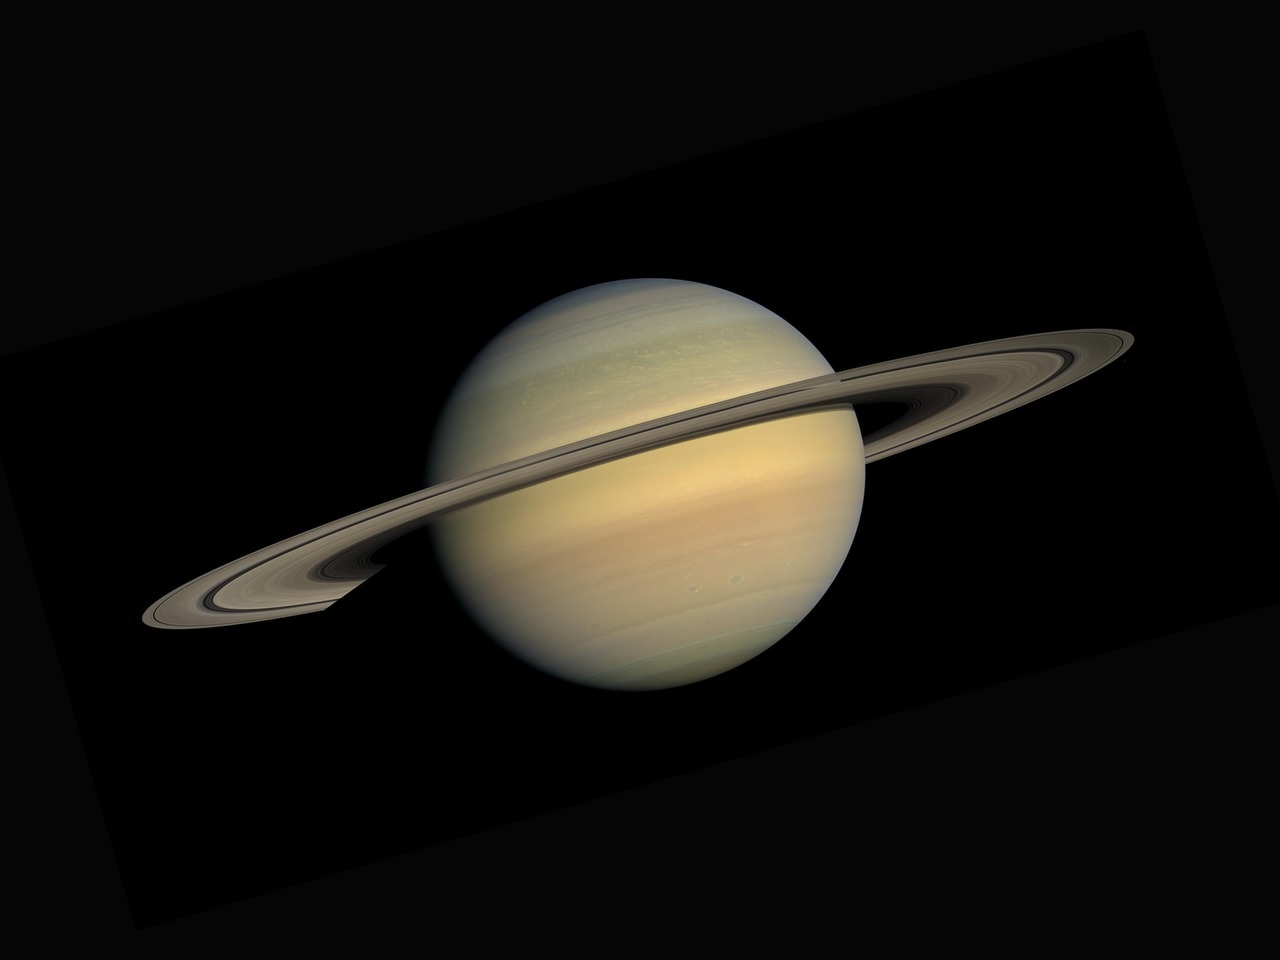 Novas imagens espetaculares dão dicas sobre a origem dos anéis de Saturno